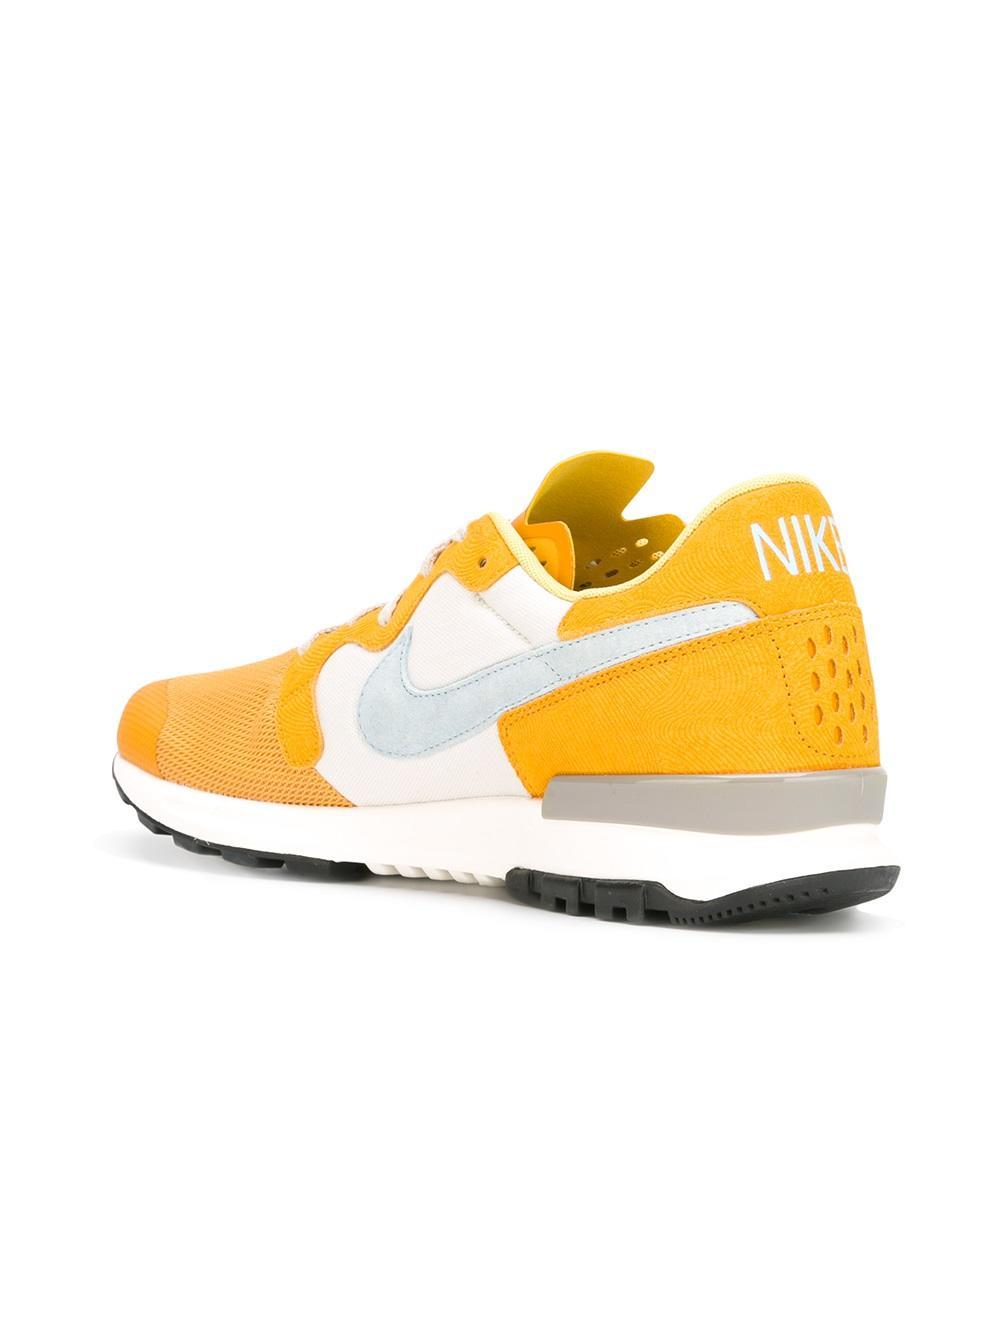 Nike Suede Air Berwuda Premium Sneakers in Yellow/Orange (Yellow) for Men |  Lyst